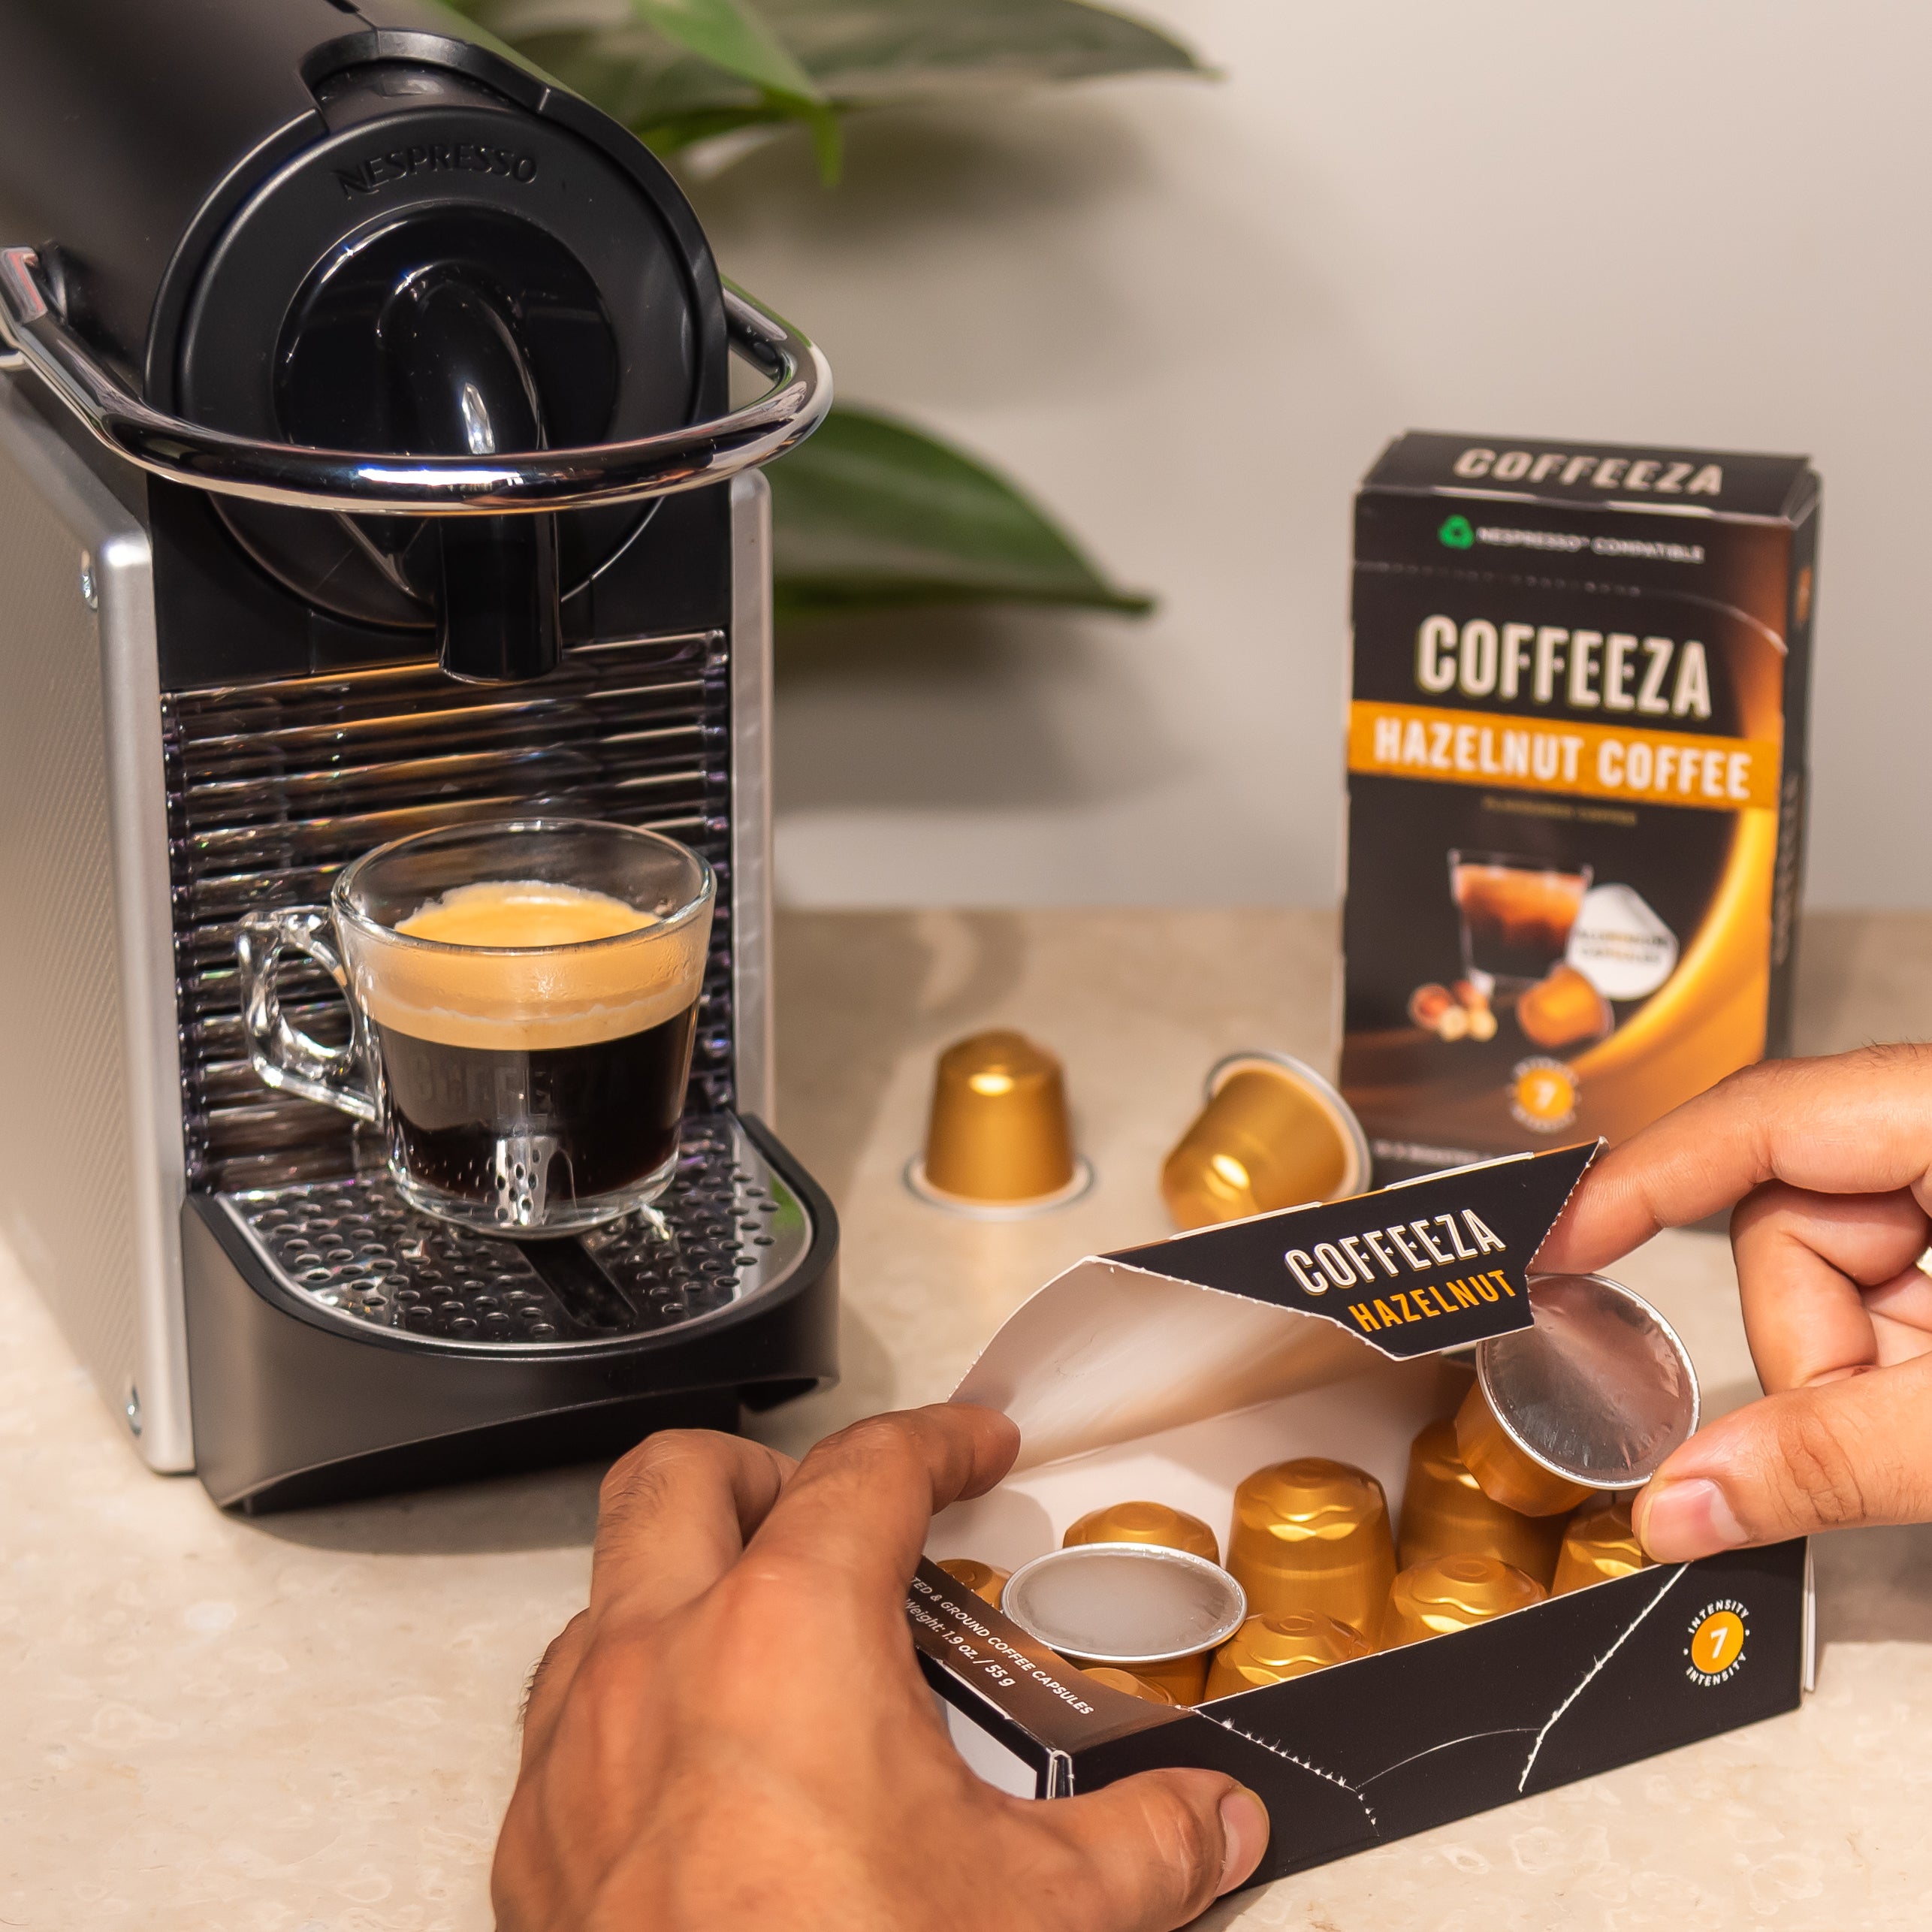 Nespresso Pixie Coffee Pods Machine